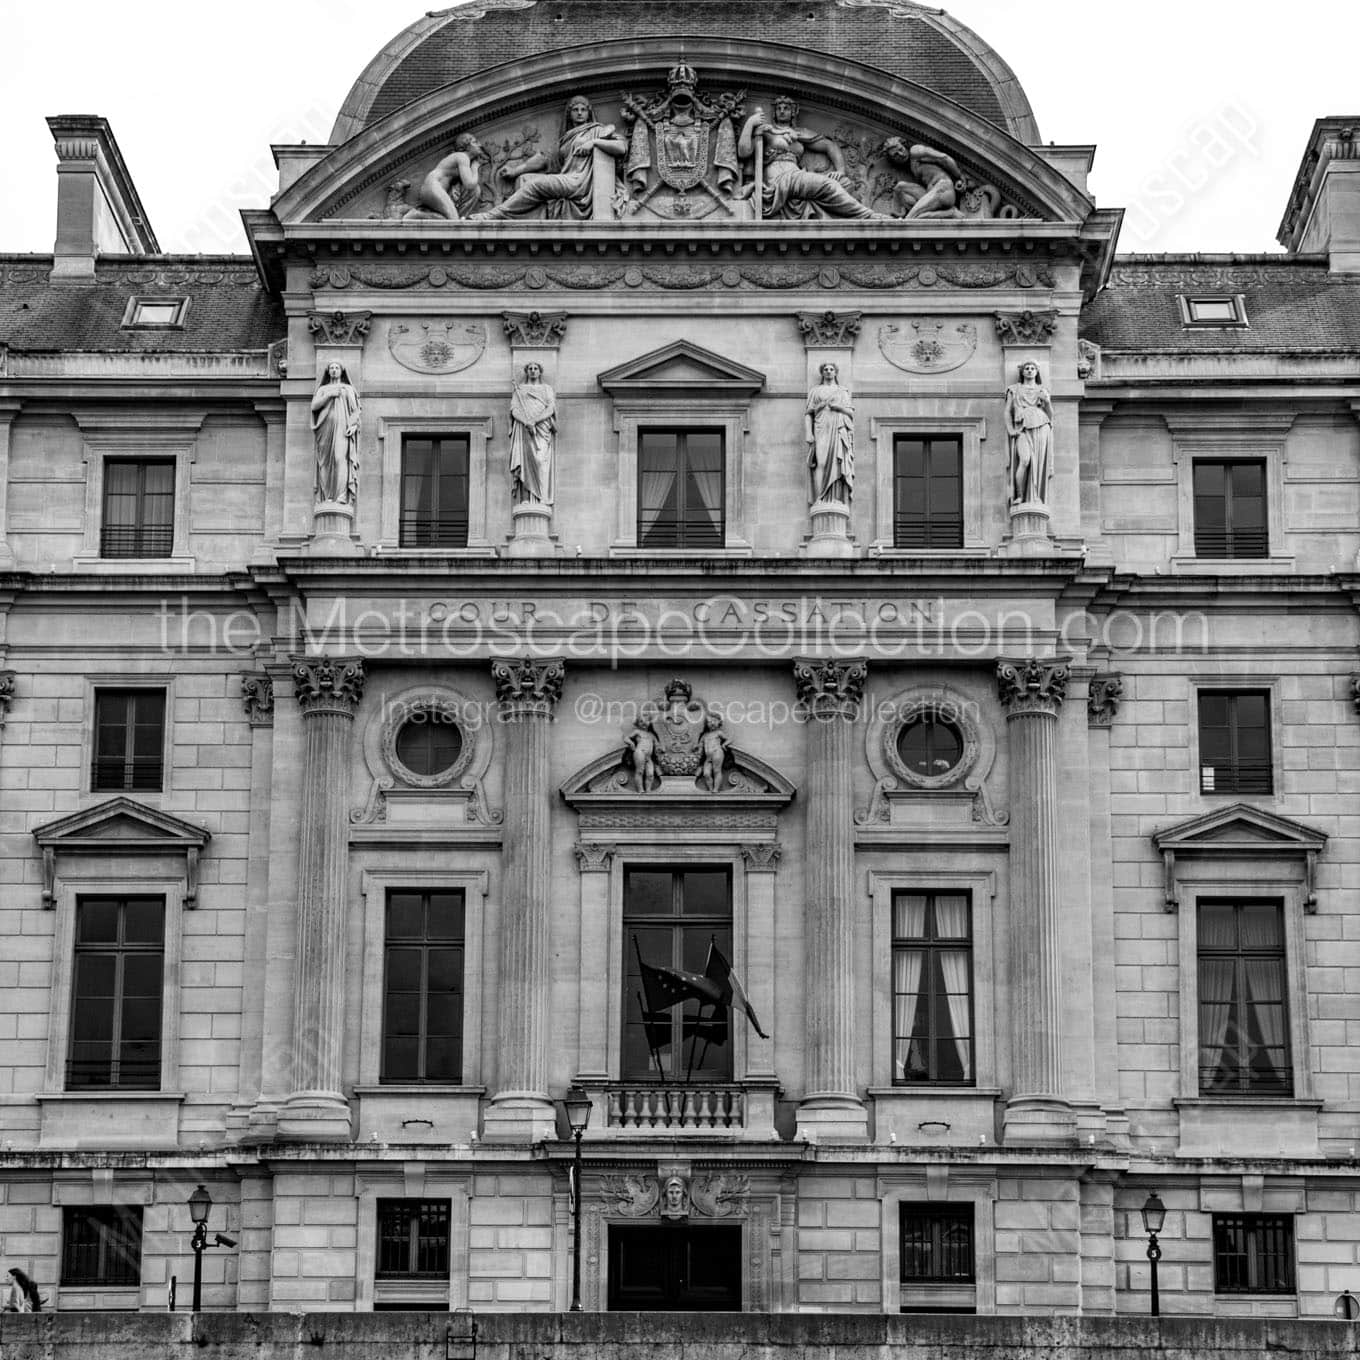 cour de cassation french supreme court building Black & White Office Art